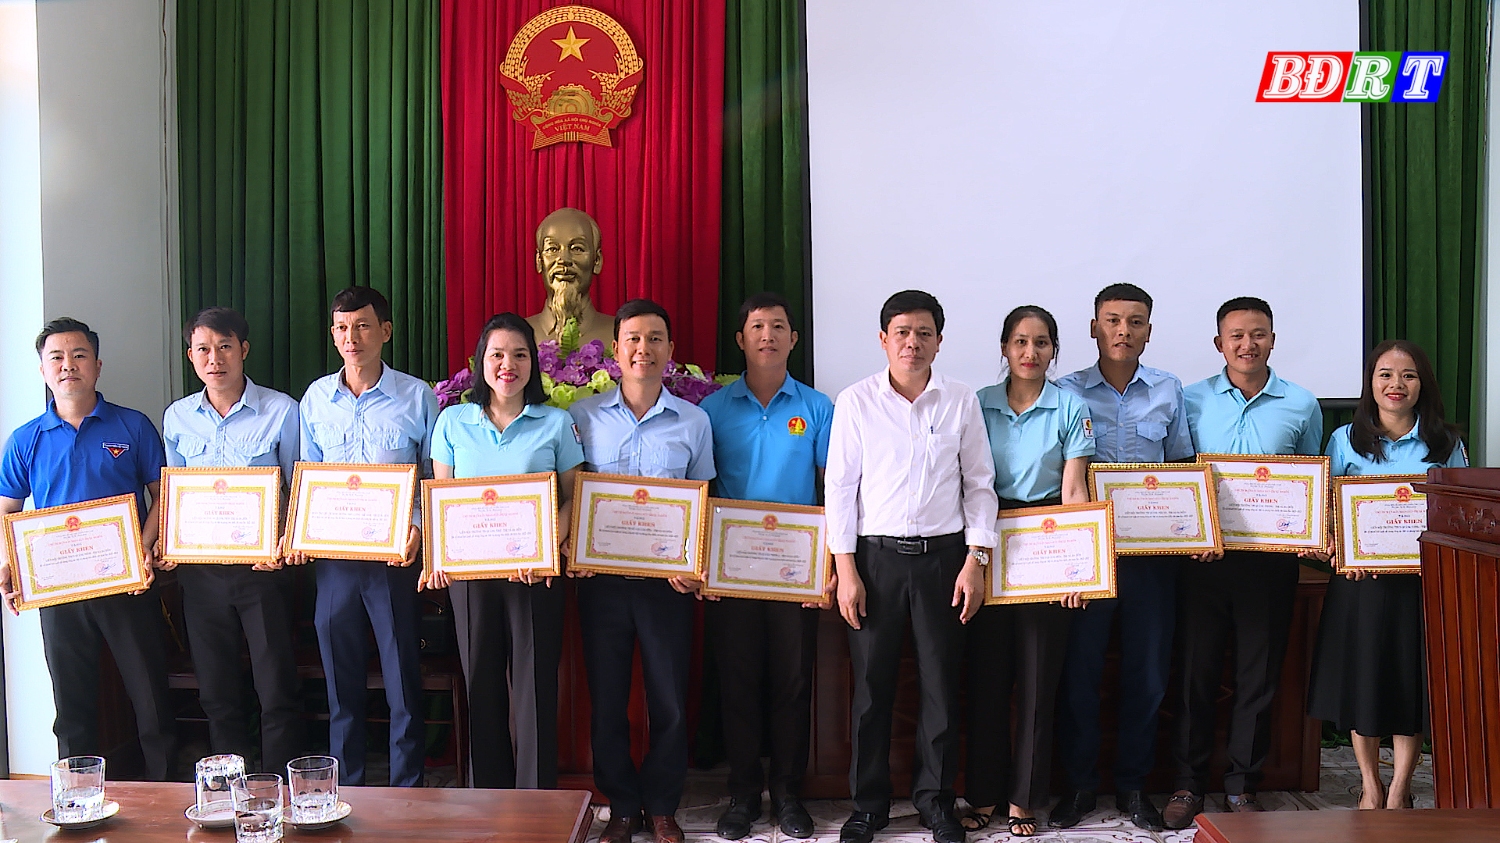 hiều tập thể và cá nhân có thành tích xuất sắc trong công tác đội và phong trào thanh thiếu nhi được nhận giấy khen của UBND thị xã Ba Đồn